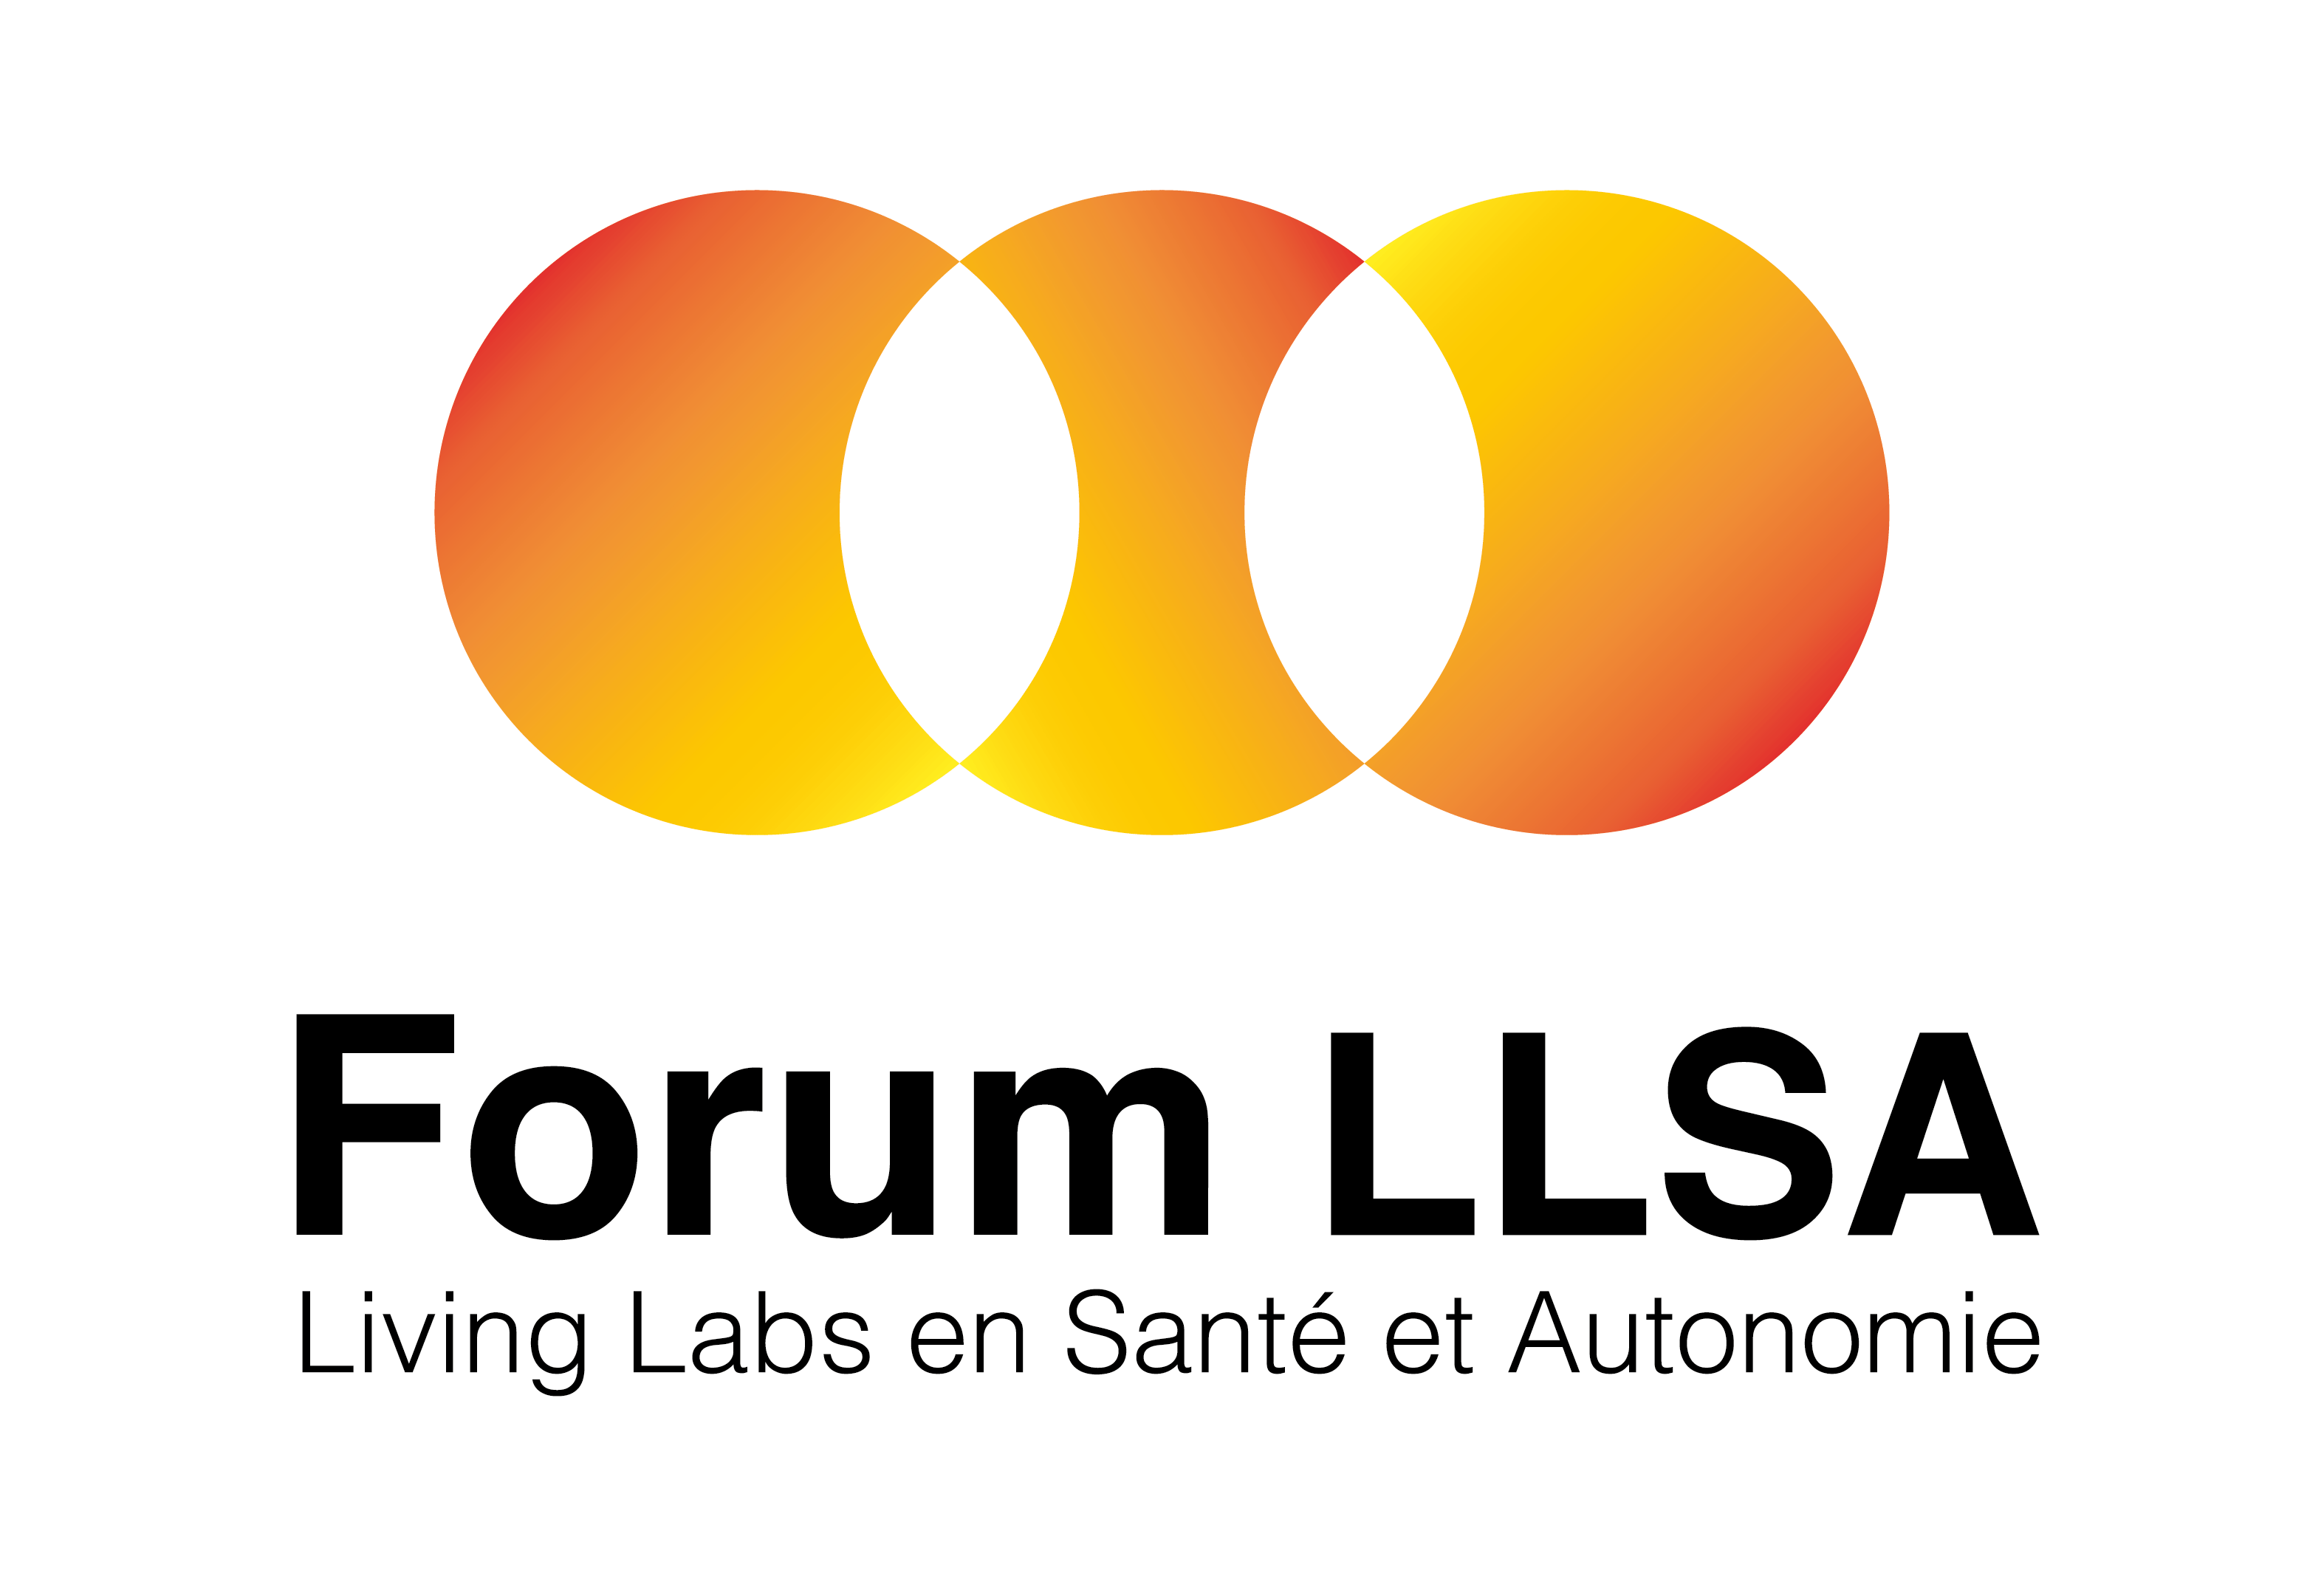 Logo Forum des Living Labs en Santé et Autonomie